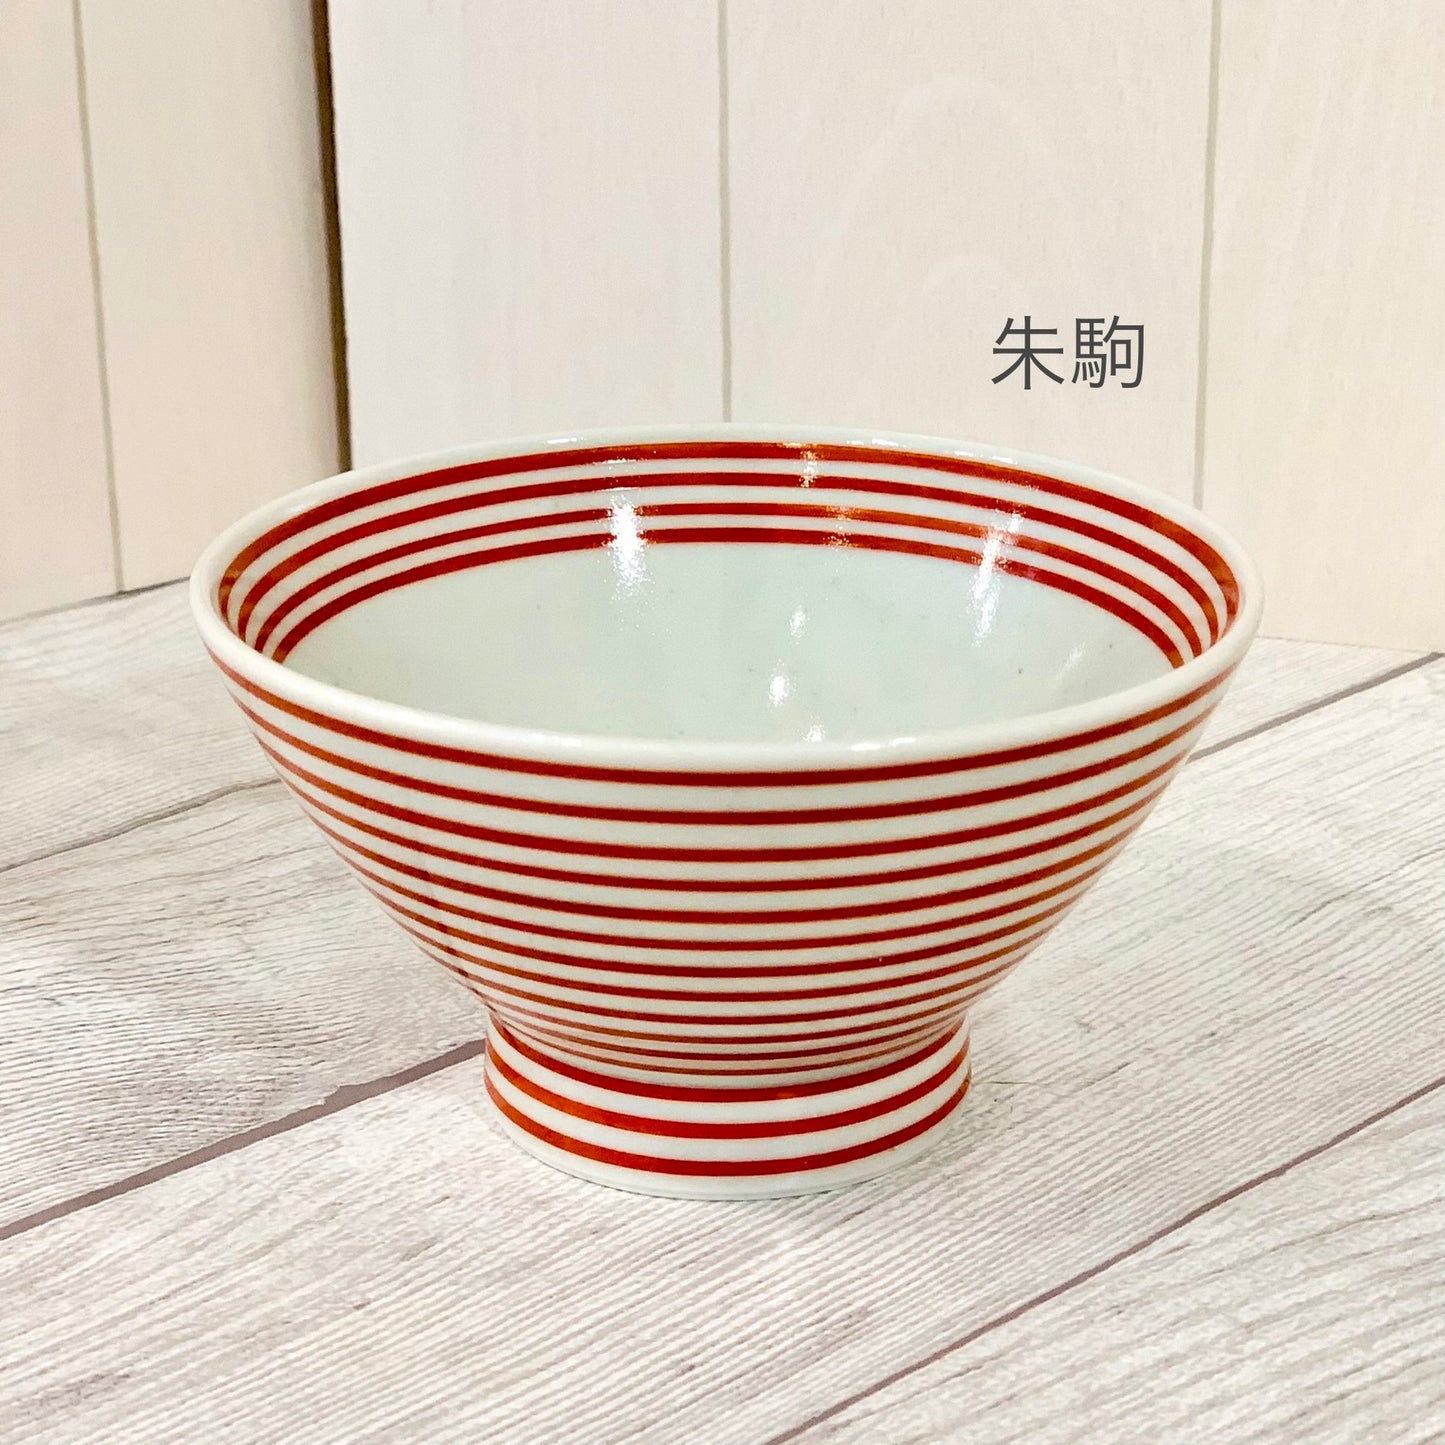 [波佐见烧] [朱红片] [艾片] [藏碗] [茶碗] [和山窑] 边饰日式餐具